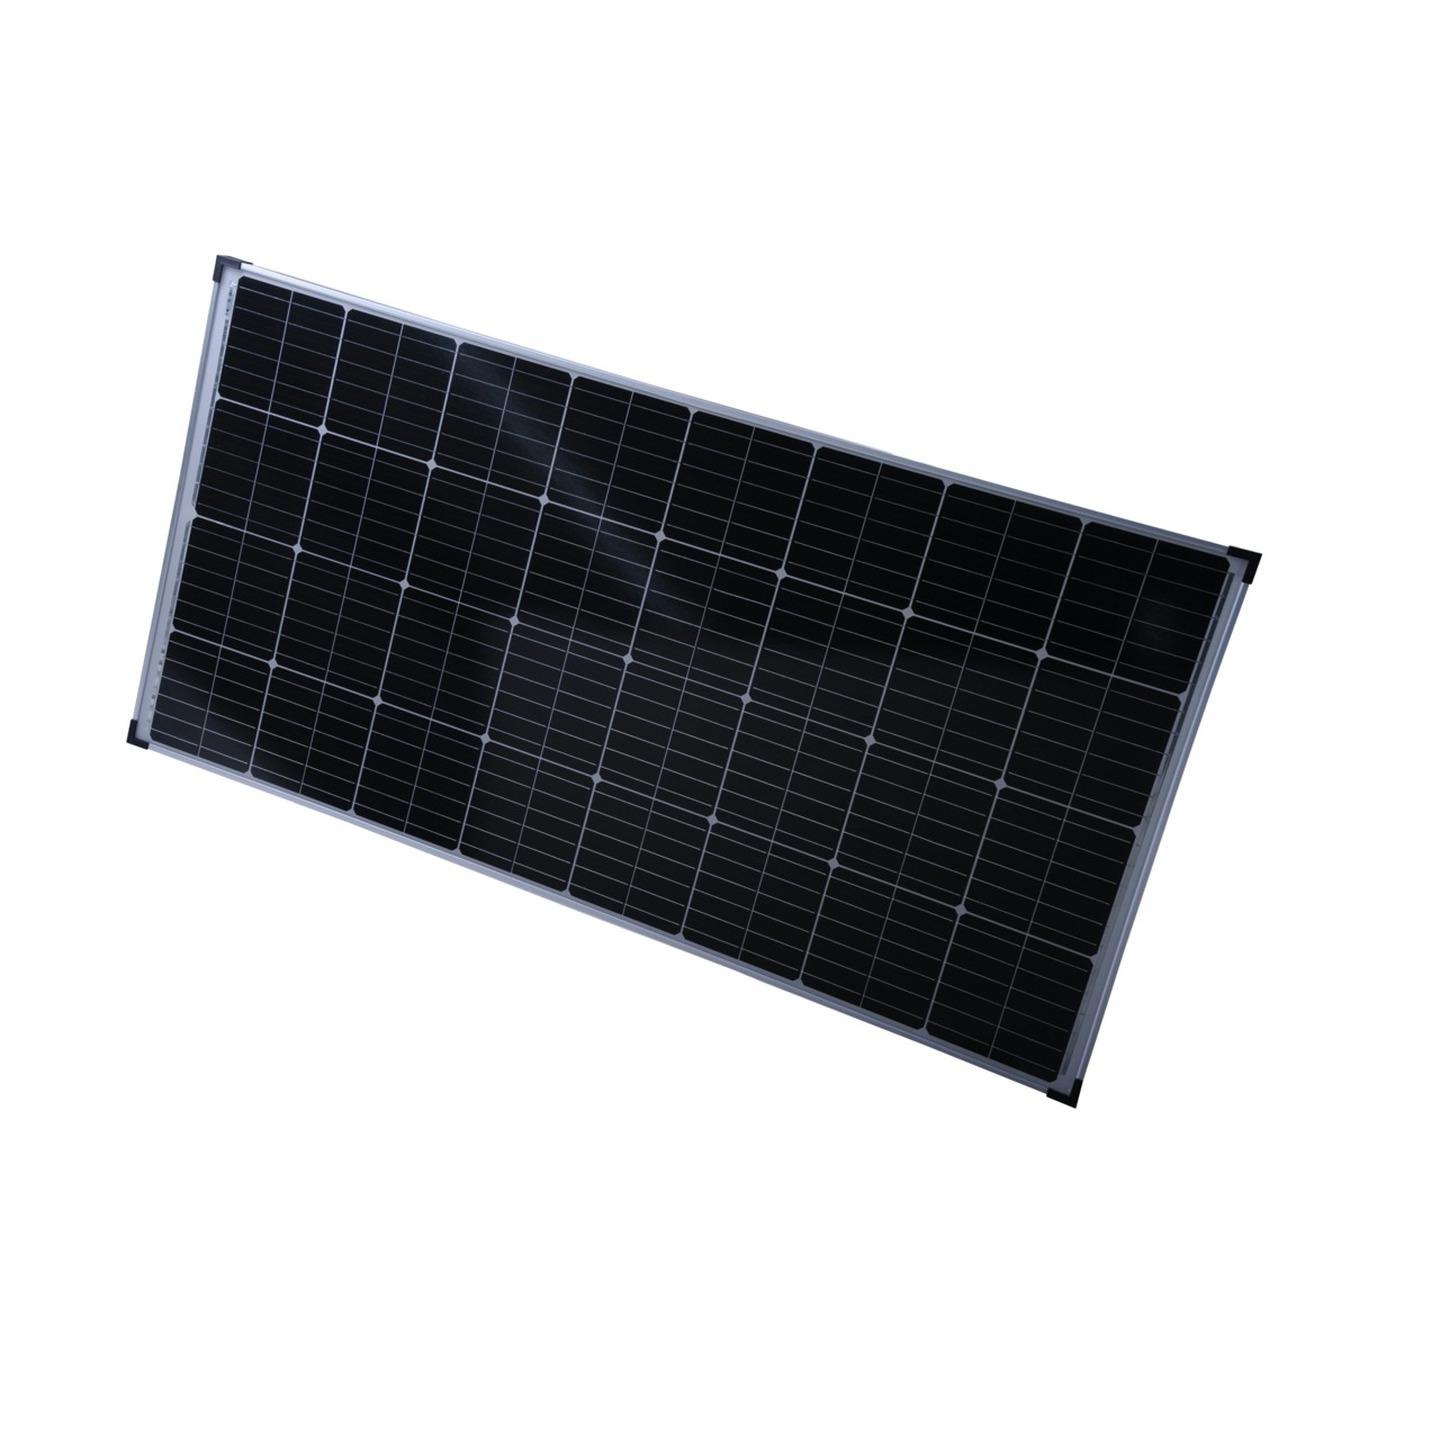 Rovin 12V 160W Monocrystalline Solar Panel